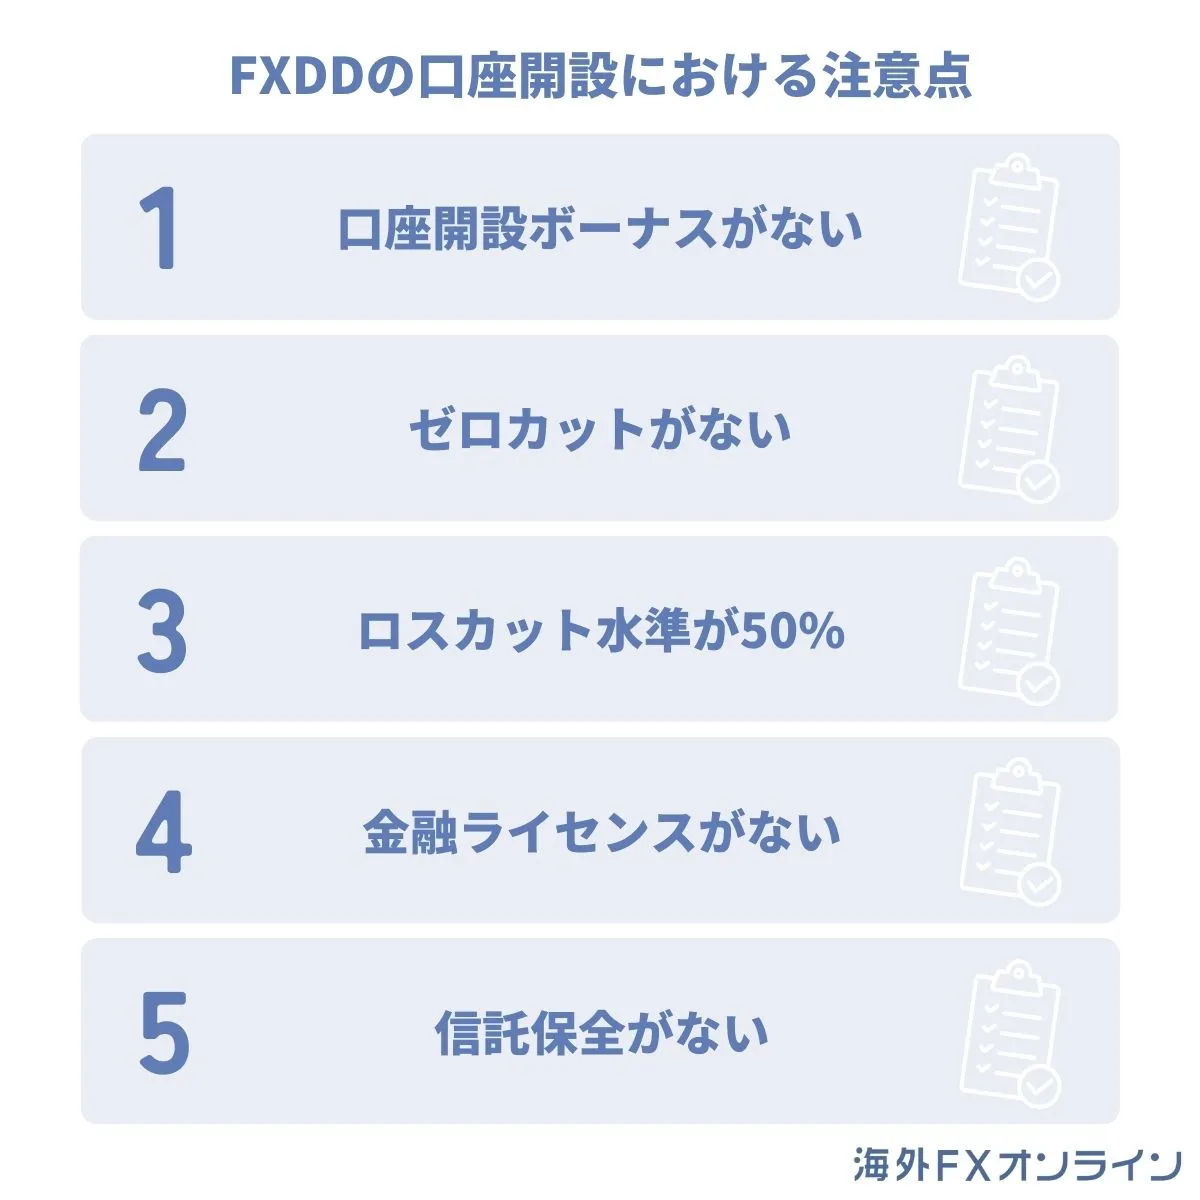 FXDDの口座開設における注意点